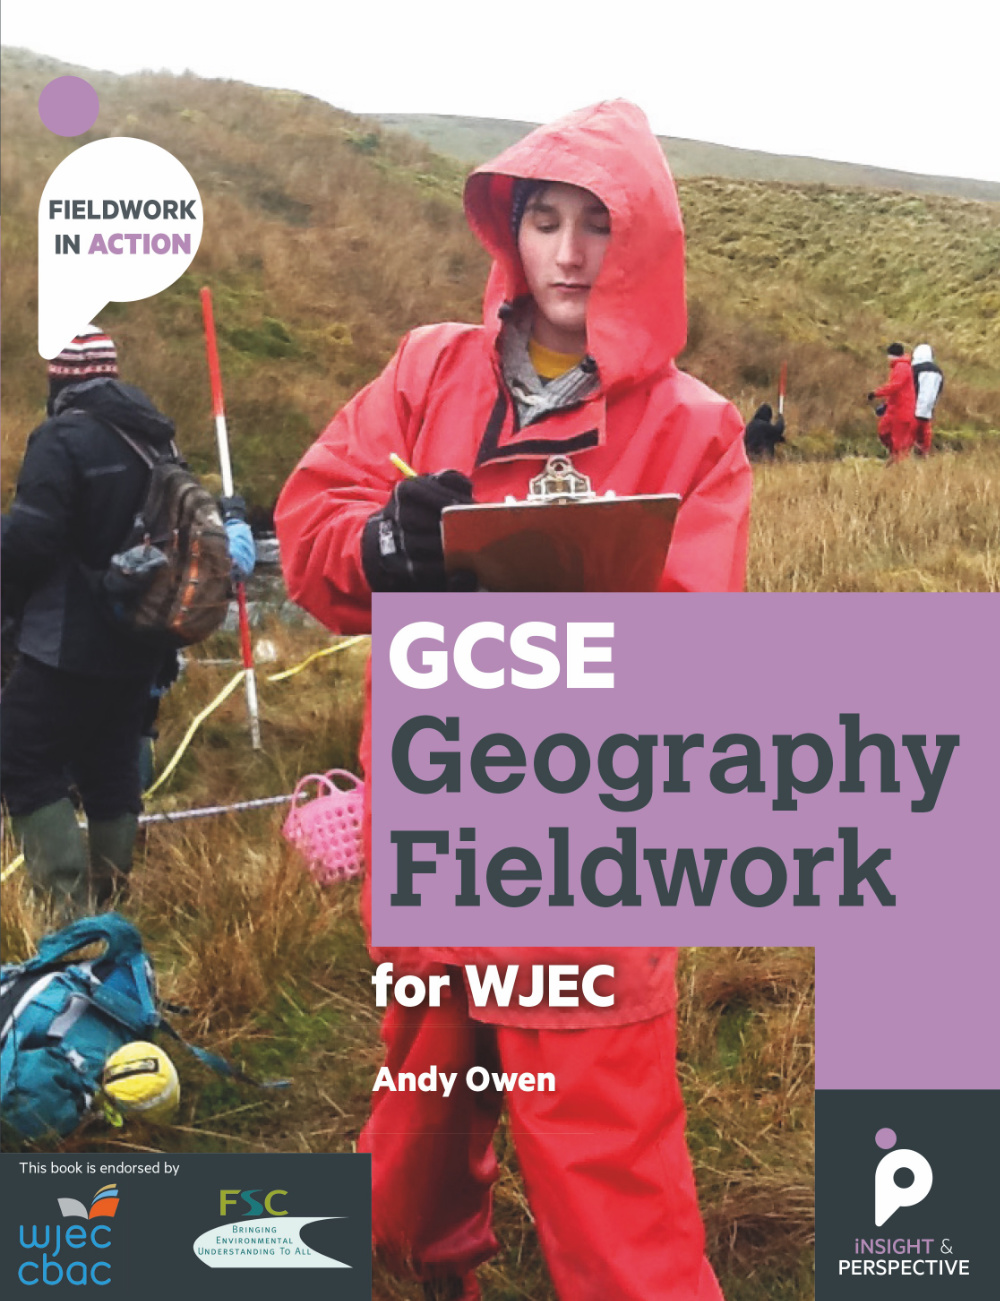 LIbri UK/US Owen, Andy - Gcse Geography Fieldwork Handbook For Wjec (Wales) NUOVO SIGILLATO, EDIZIONE DEL 06/04/2018 SUBITO DISPONIBILE